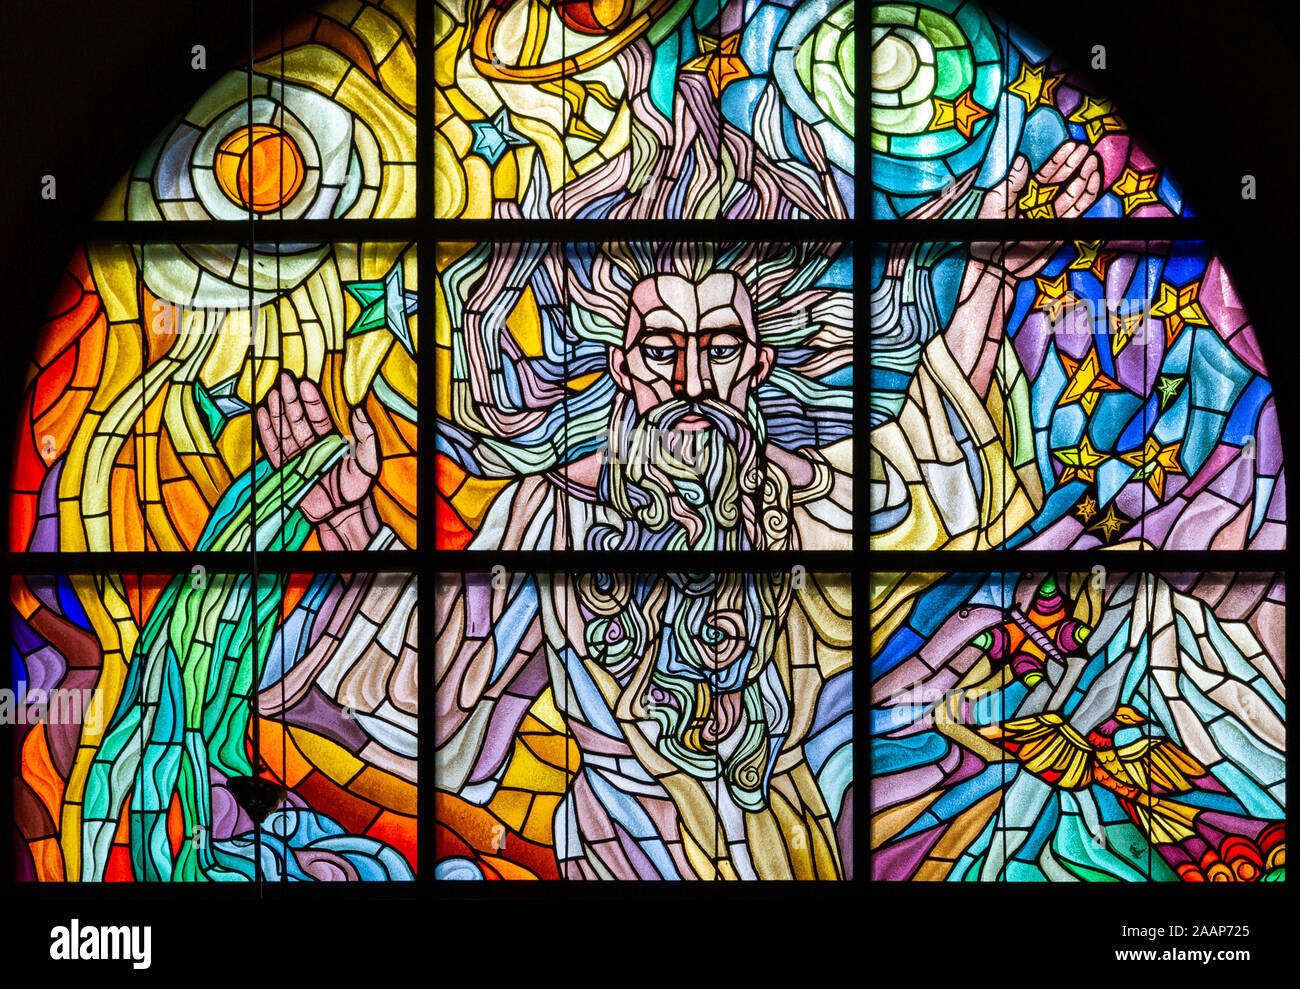 Buntglasfenster mit der Darstellung der Erschaffung der Welt mit den Worten "Und Gott sprach: Laßt uns..." römisch-katholische Kirche der Heiligen Anna. Stockfoto